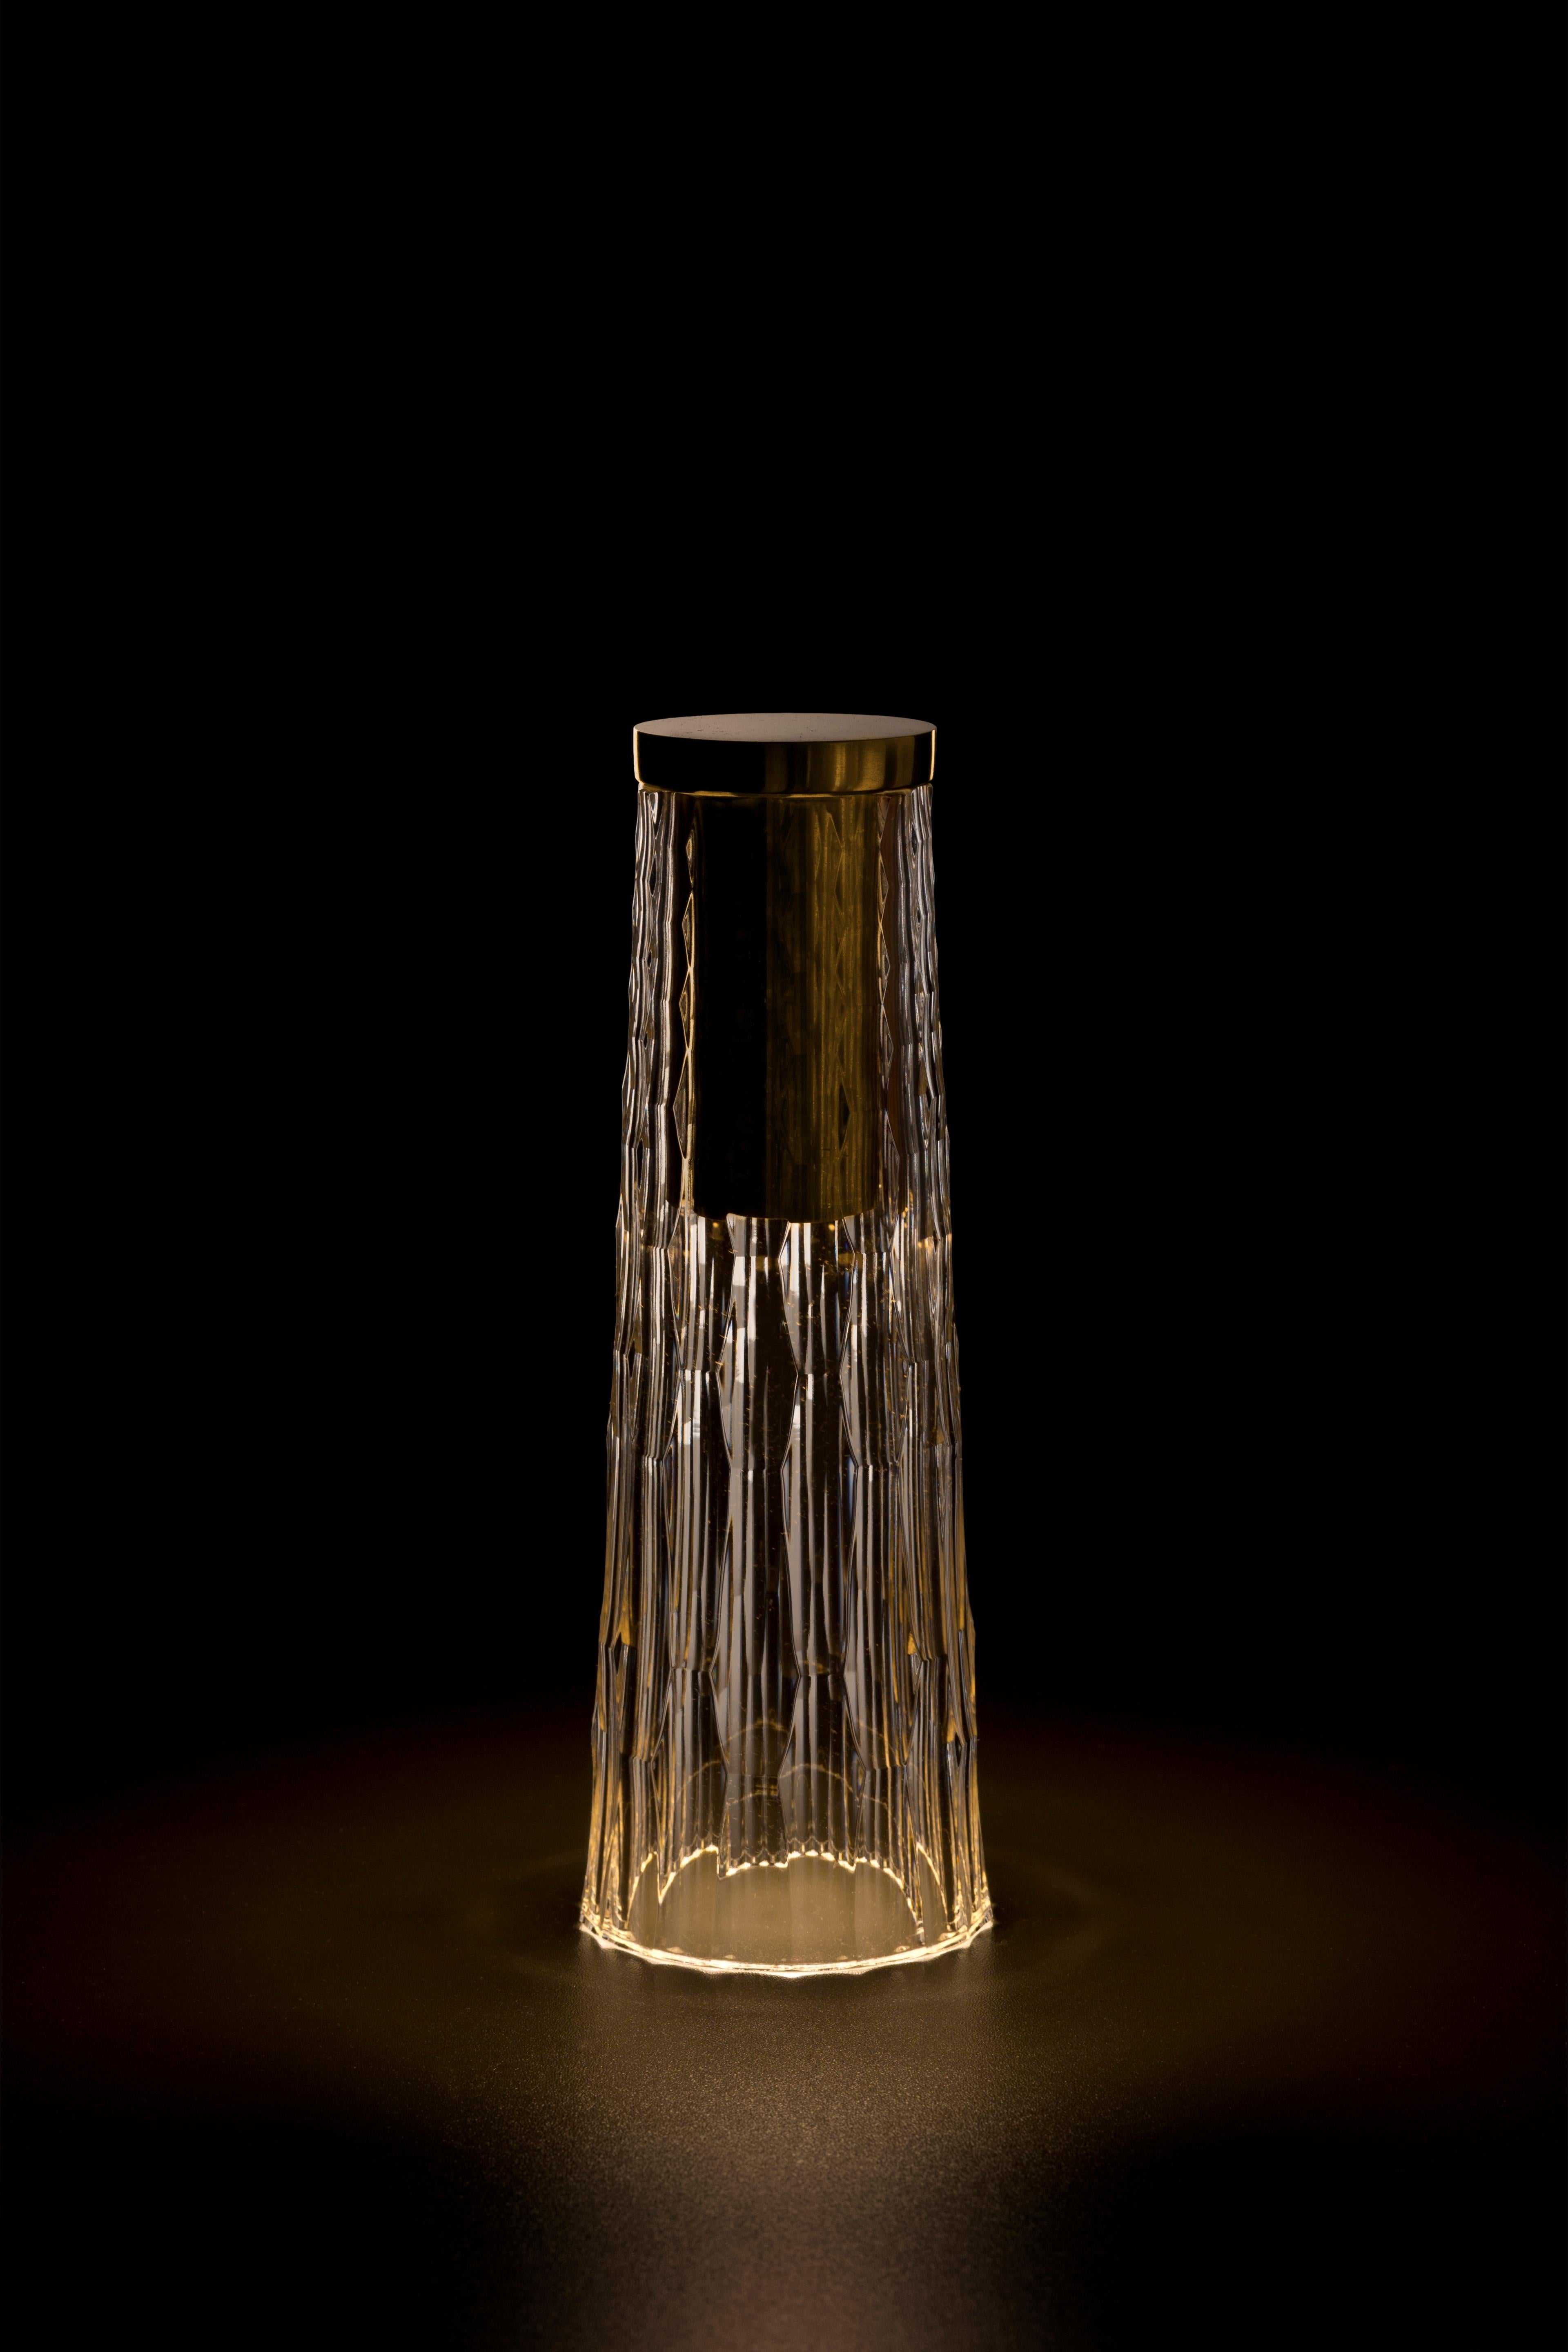 La lampe de table portable sans fil Babel crystal est conçue par Noe Duchaufour Lawrance pour GAIA&GINO. 

La lampe de table sans fil Babel s'inspire des artisans qui taillent le cristal. Chacun de leurs gestes, inlassablement répétés et maîtrisés